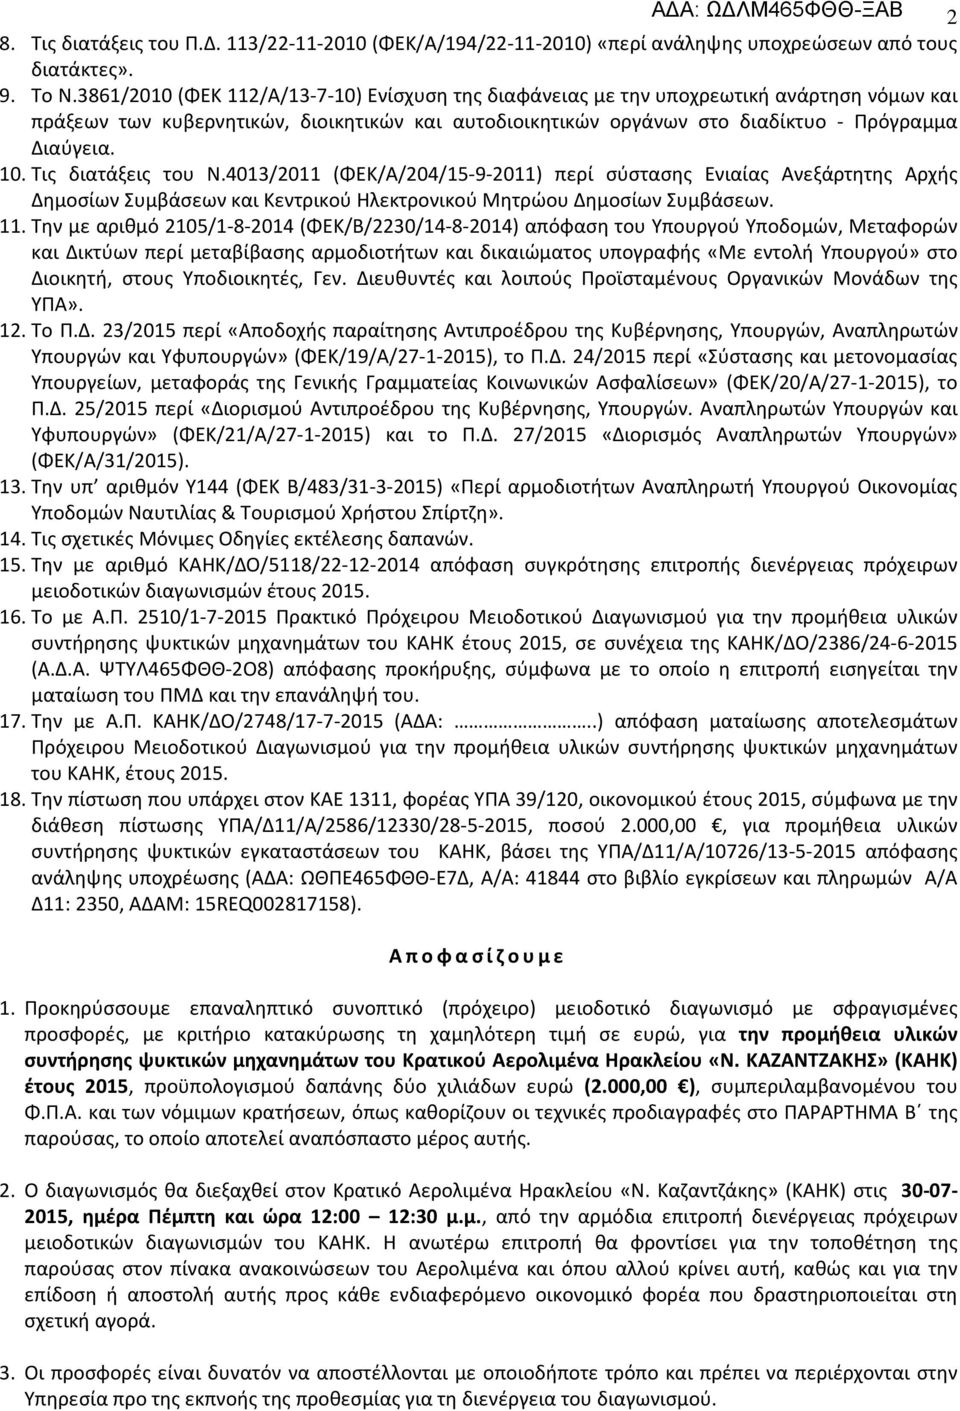 Τις διατάξεις του Ν.4013/2011 (ΦΕΚ/Α/204/15-9-2011) περί σύστασης Ενιαίας Ανεξάρτητης Αρχής Δημοσίων Συμβάσεων και Κεντρικού Ηλεκτρονικού Μητρώου Δημοσίων Συμβάσεων. 11.